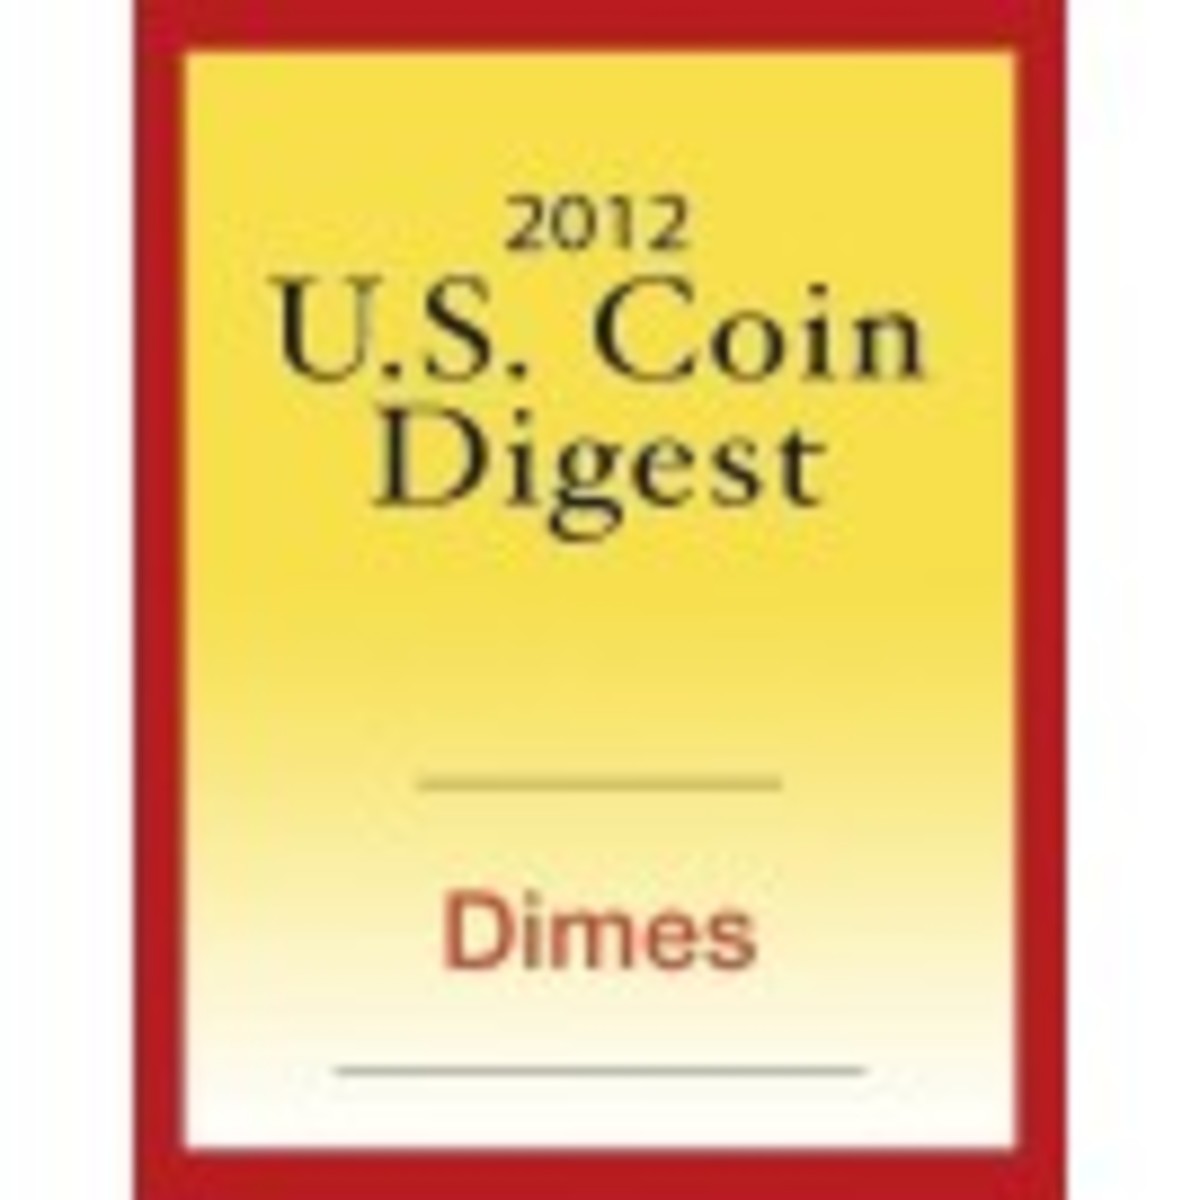 2012 U.S. Coin Digest: Dimes